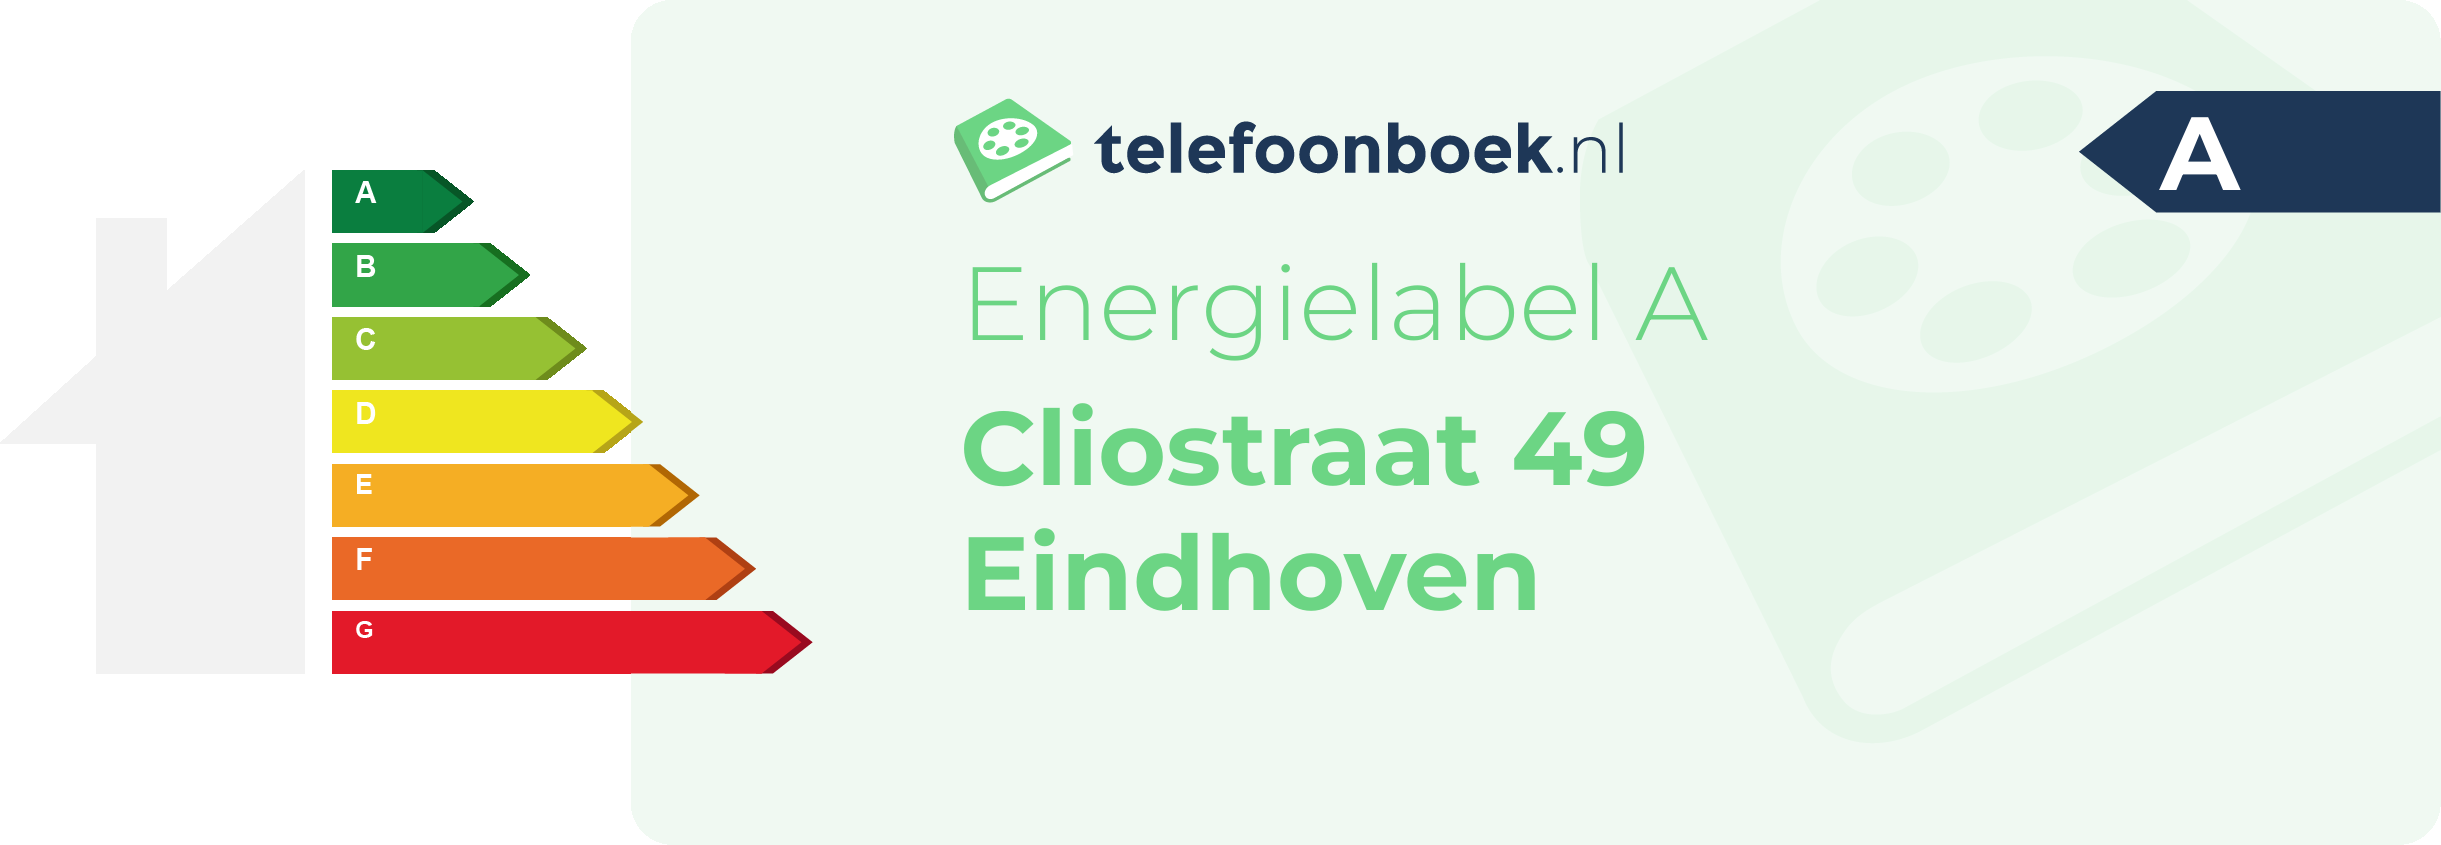 Energielabel Cliostraat 49 Eindhoven